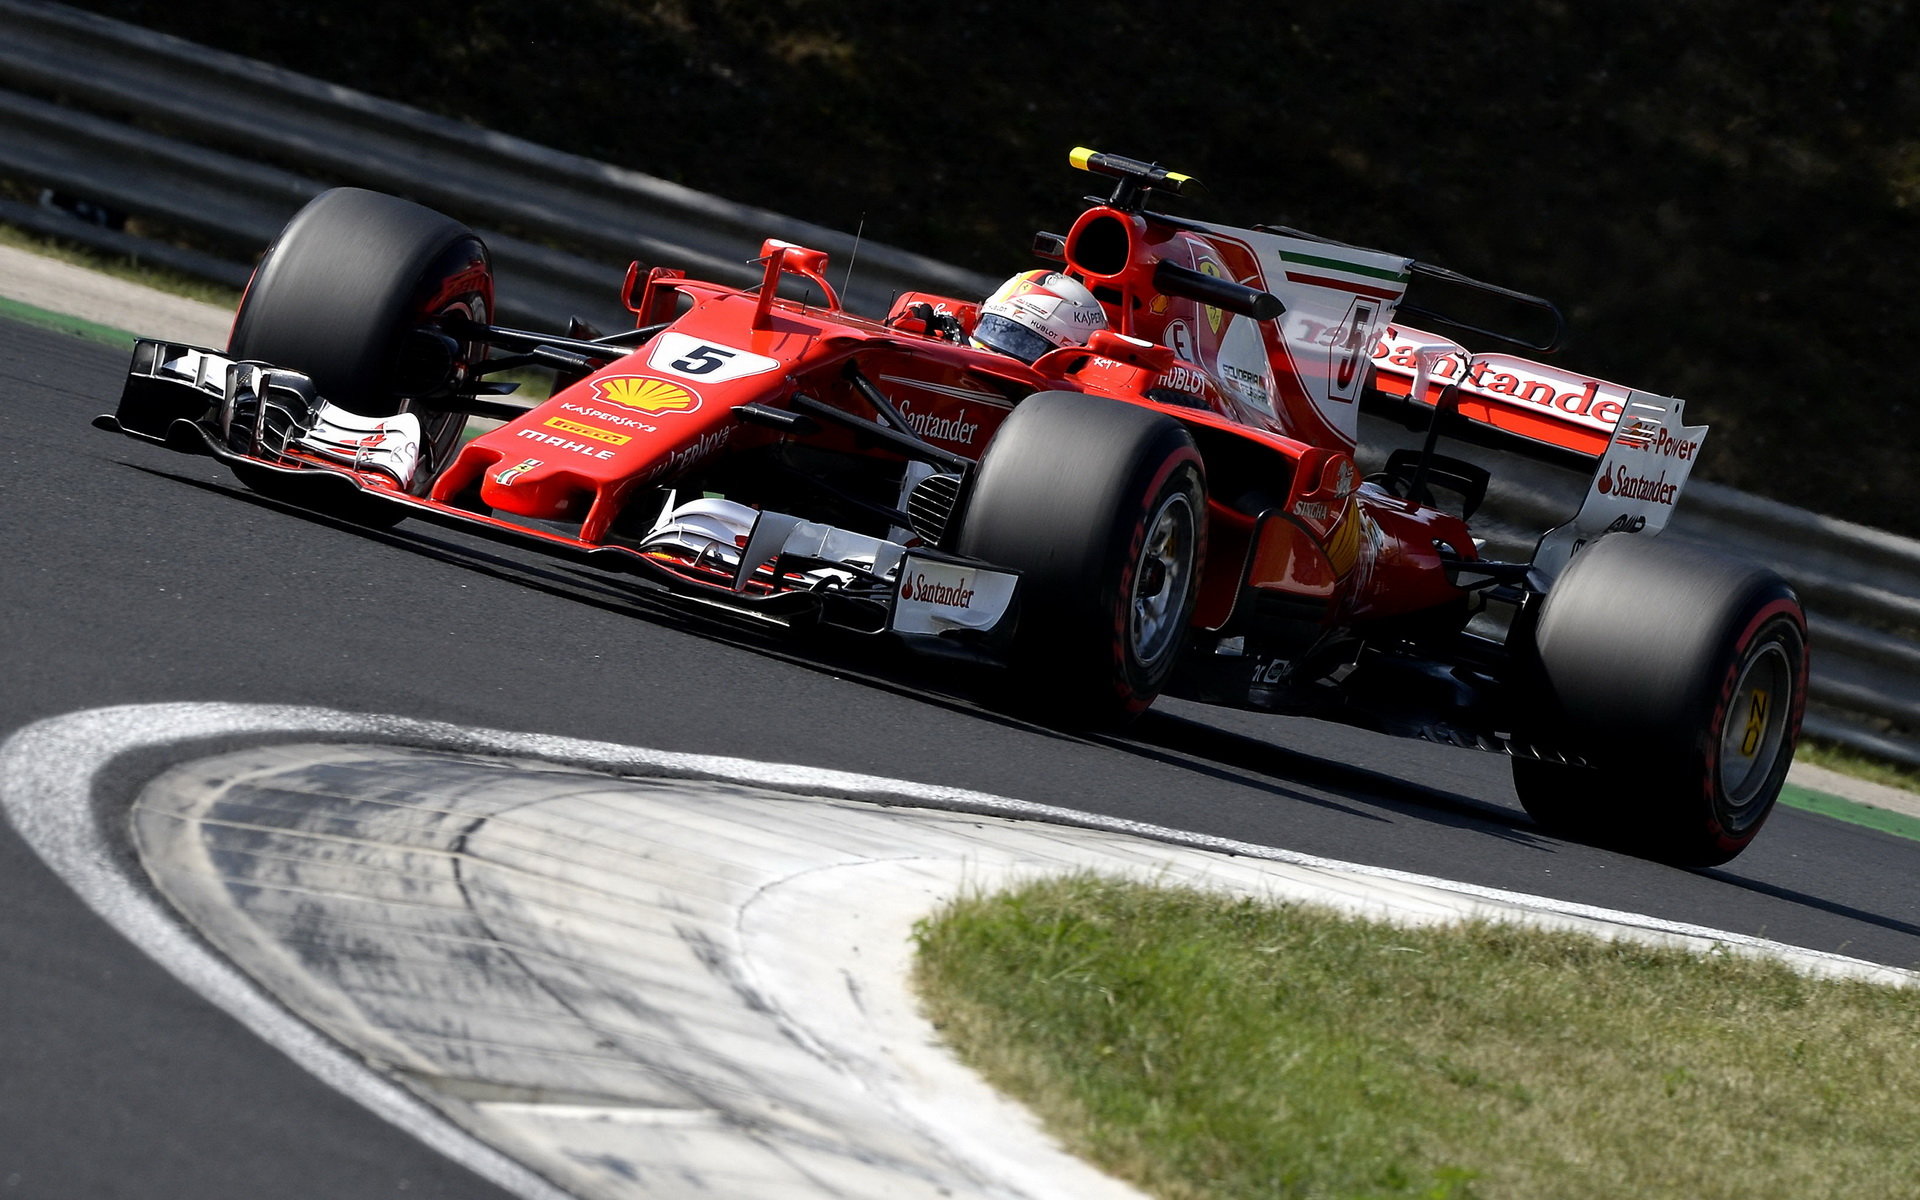 Sebastian Vettel testuje druhý den vůz Ferrari SF70H v Maďarsku